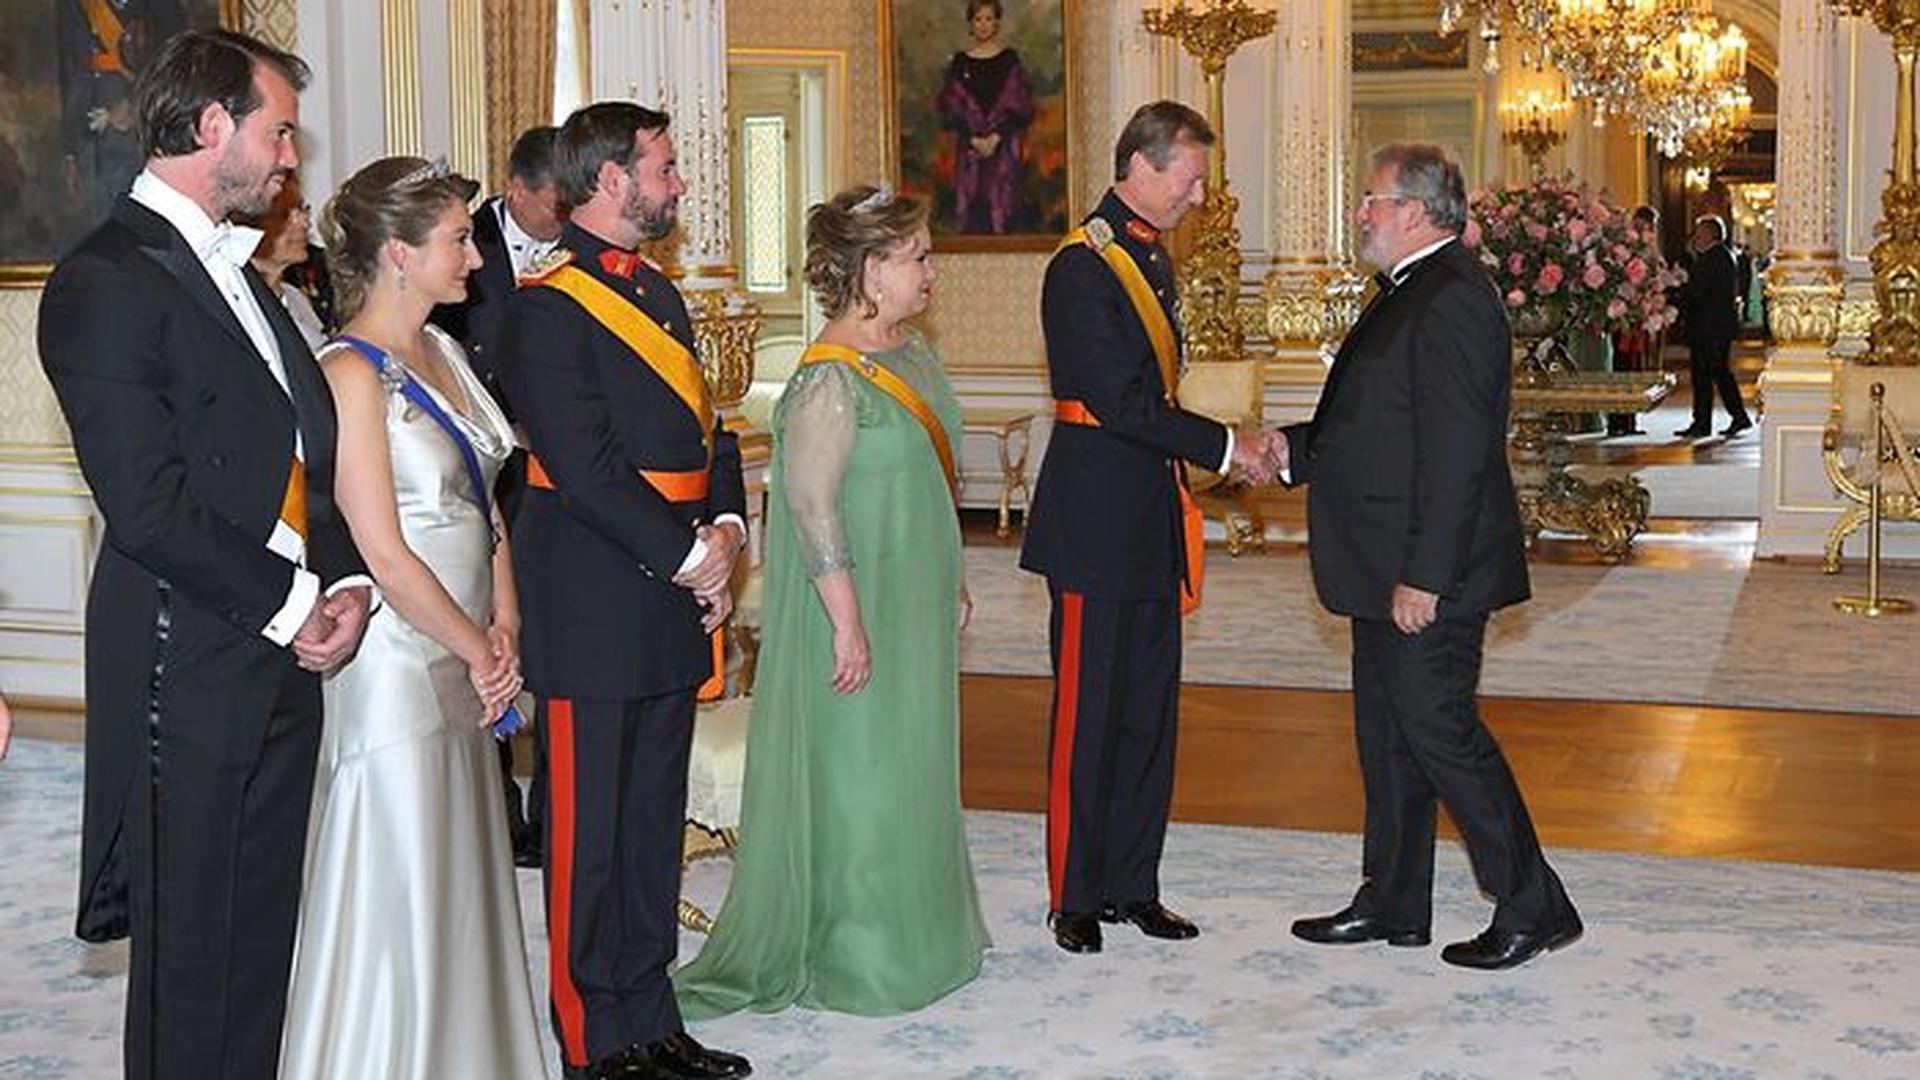 O presidente da Câmara dos Deputados, Mars di Bartolomeo, cumprimenta o Grão-Duque